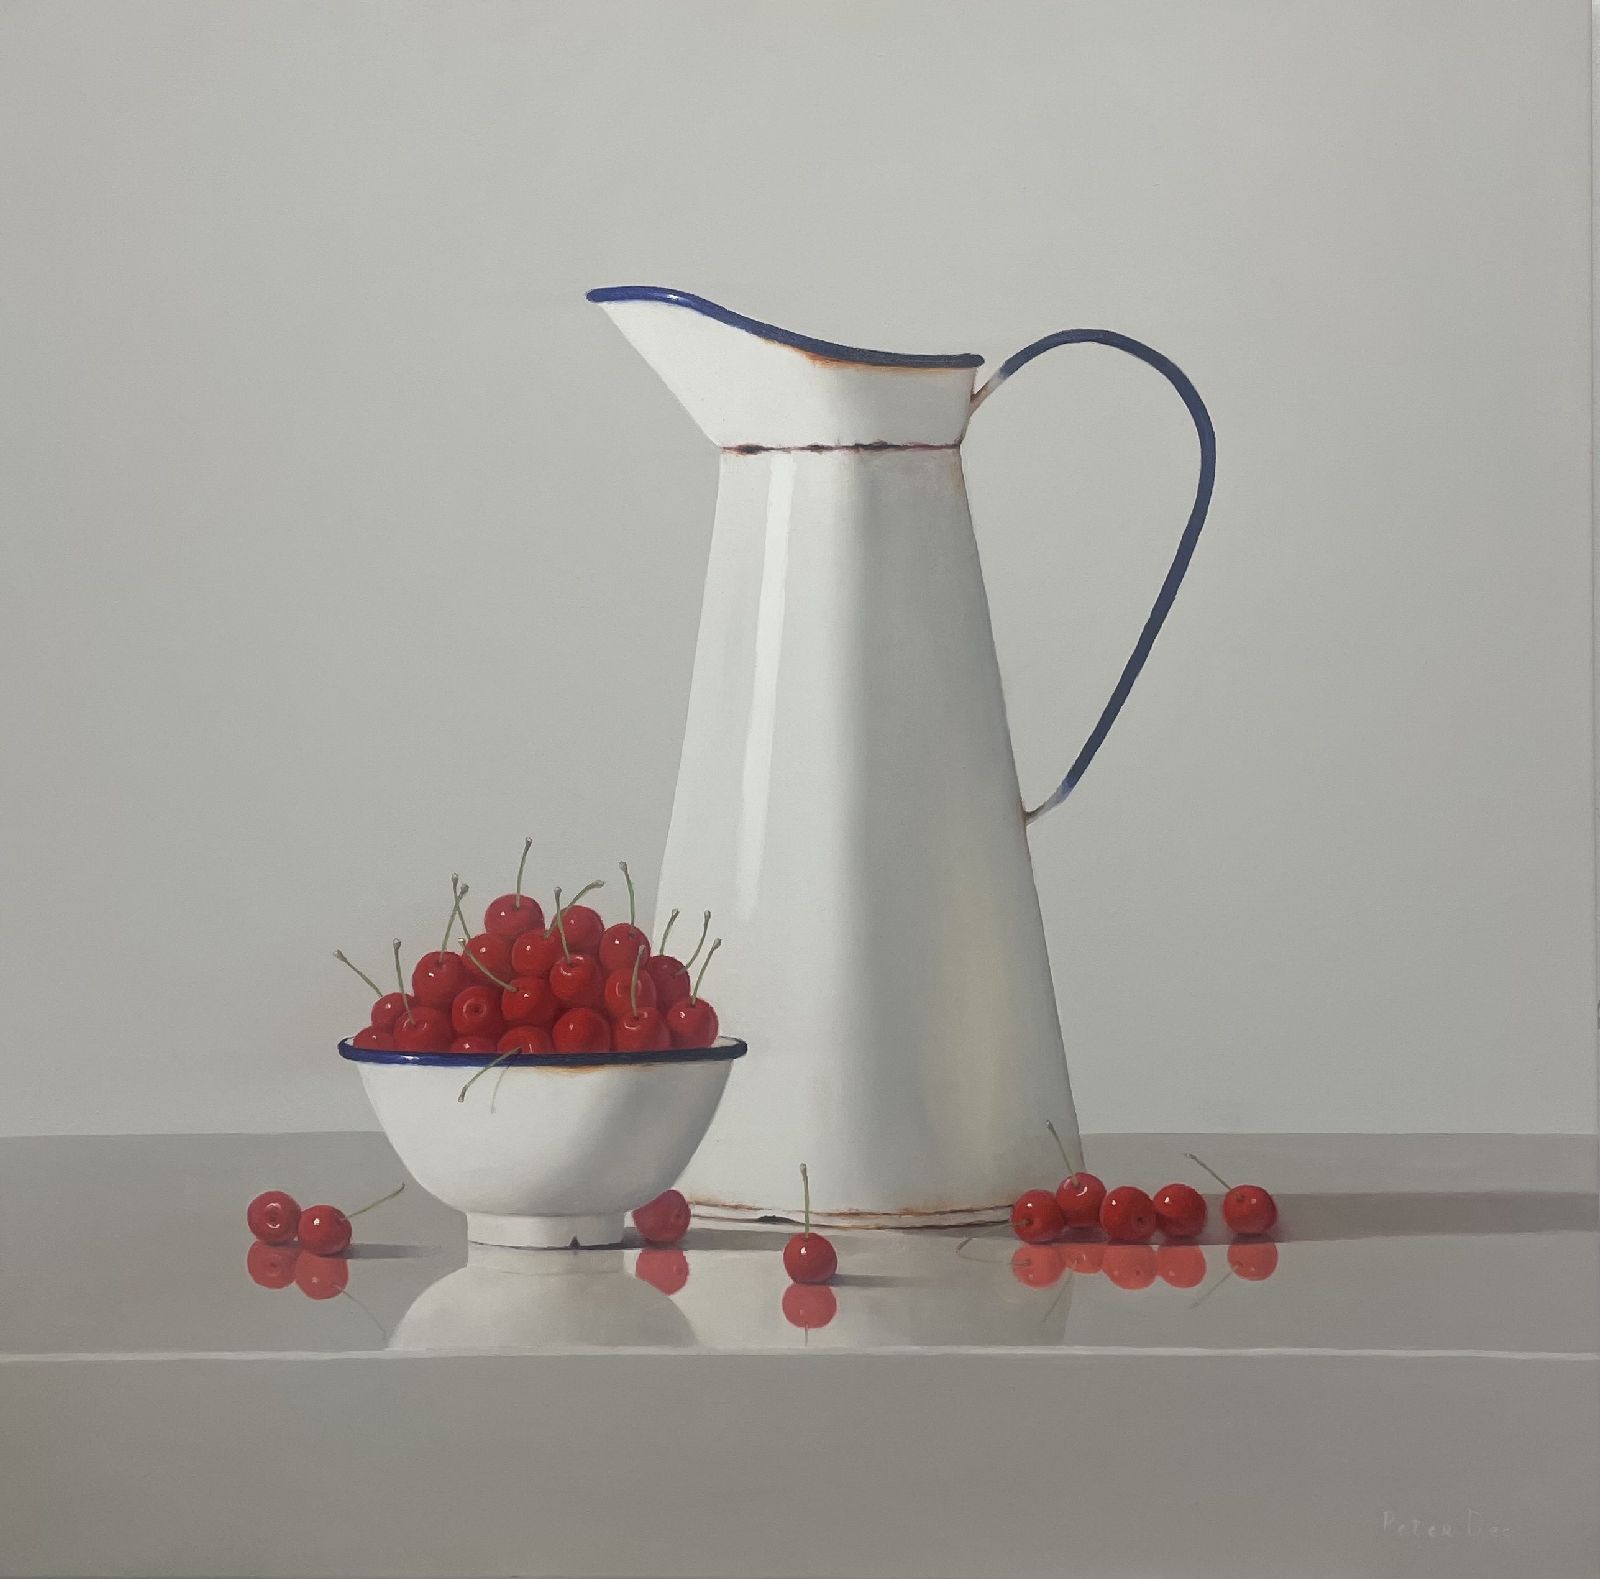 Vintage White Enamelware with Cherries by Peter Dee